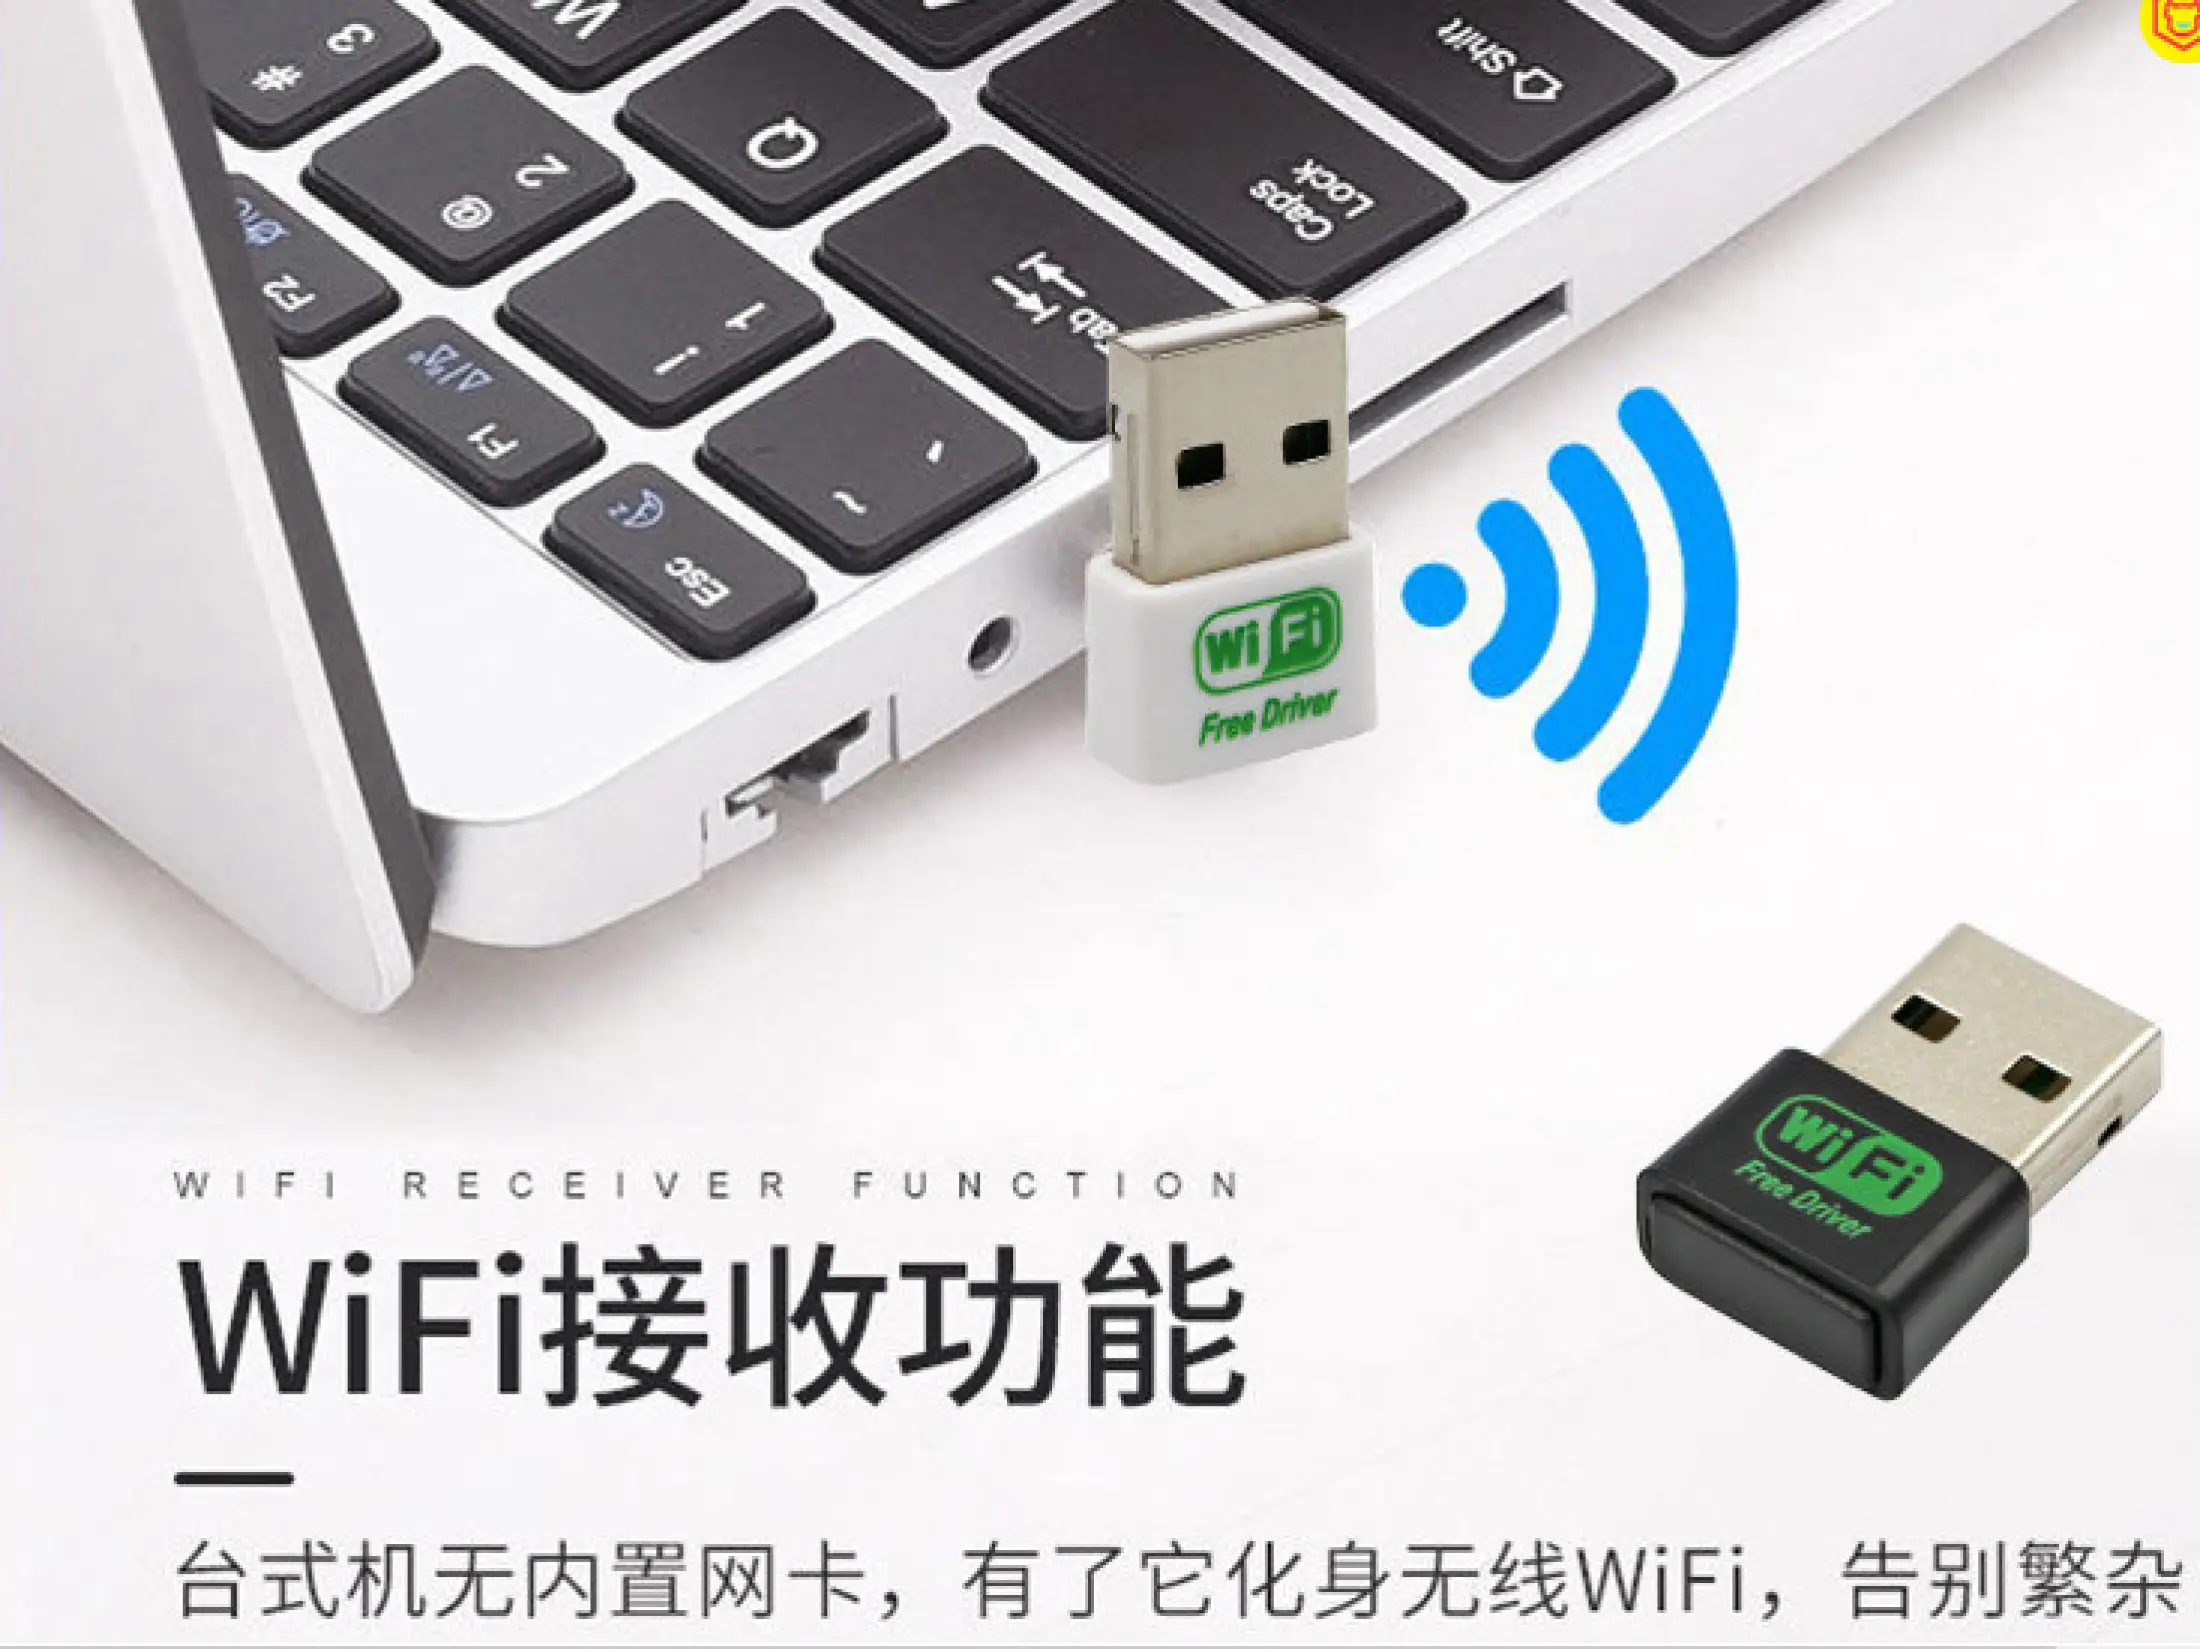 USB WIFI. Không cần cài cắm vào máy là sài dùng cho PC laptop tiện